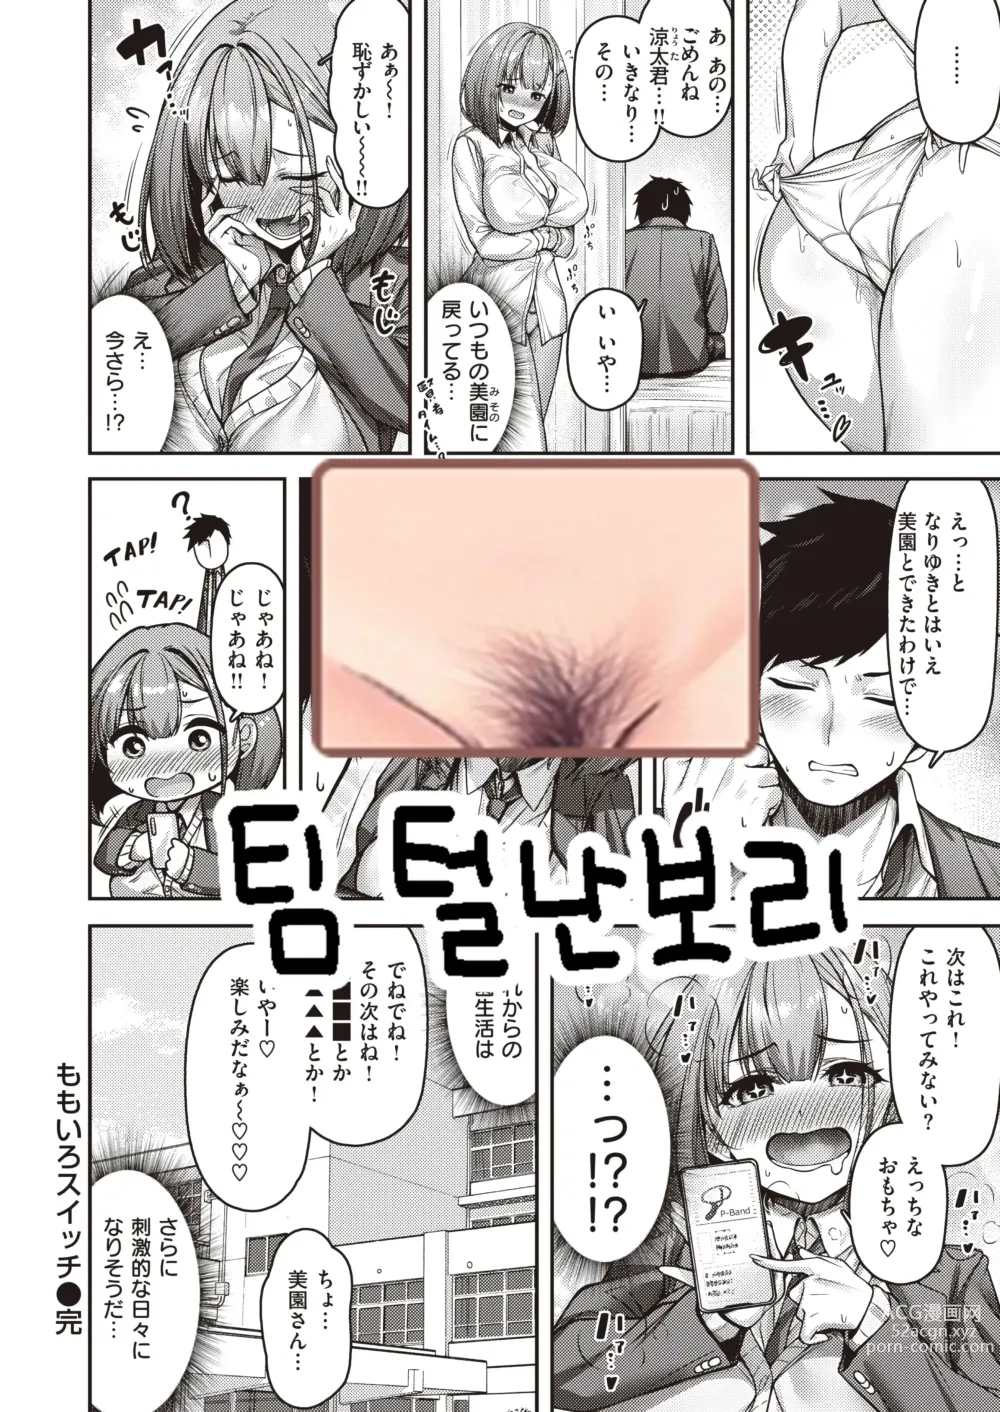 Page 27 of manga Momoiro switch